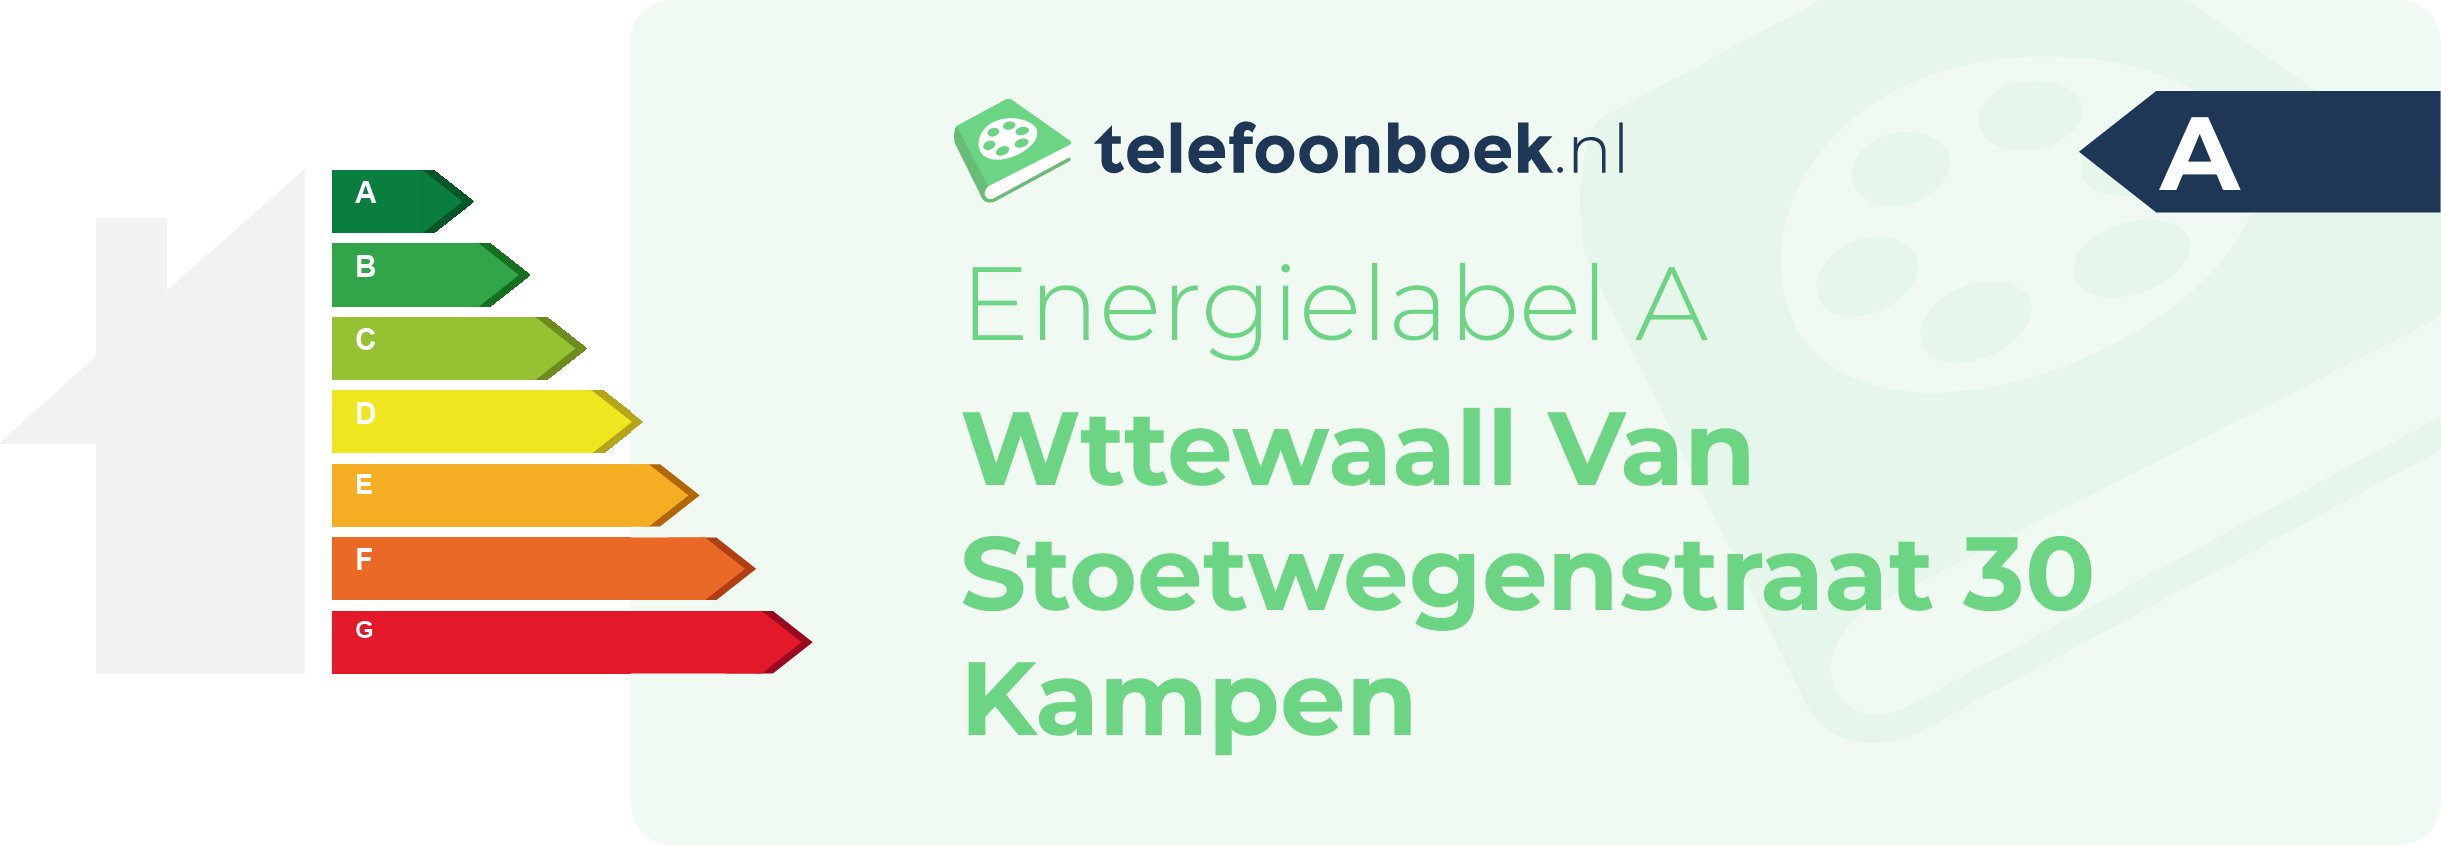 Energielabel Wttewaall Van Stoetwegenstraat 30 Kampen